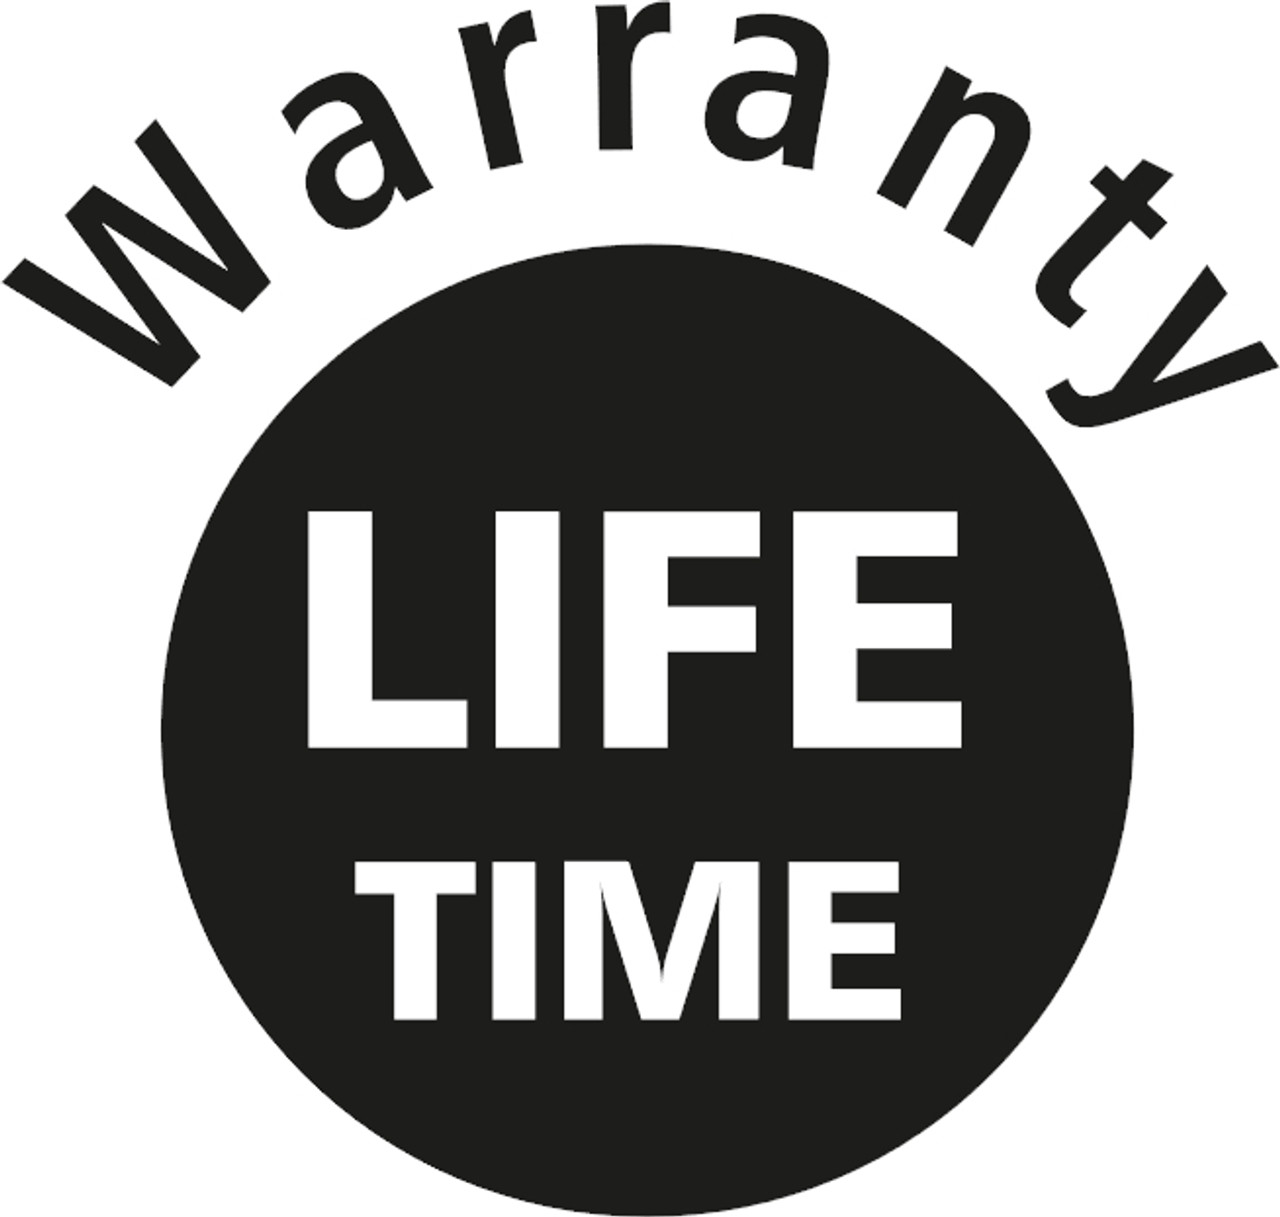 Manucaturer's lifetime warranty mark